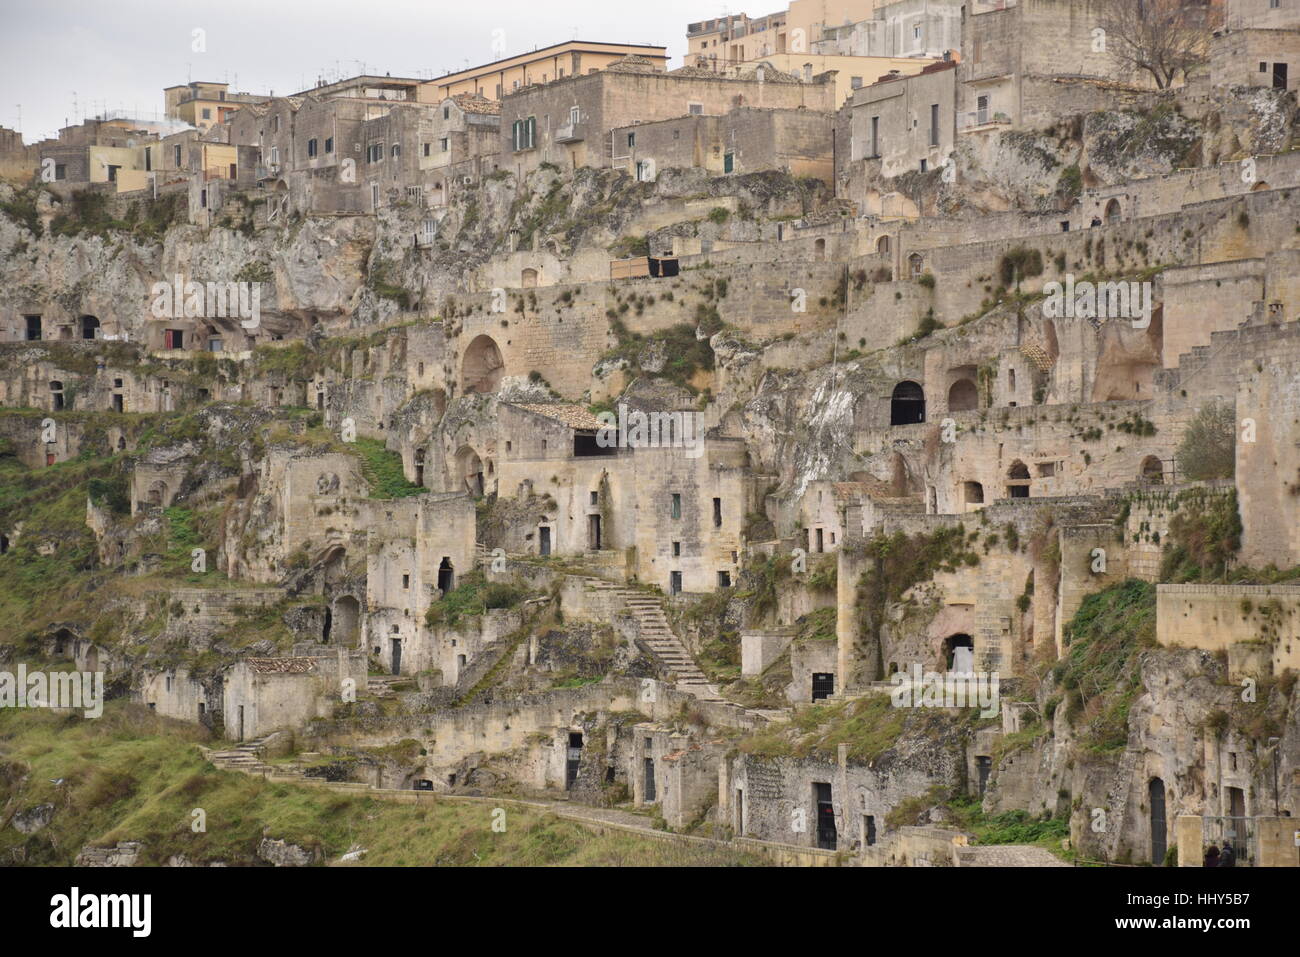 Vue panoramique sur les pierres de Matera (Sassi di Matera), Capitale européenne de la Culture 2019 04 janvier, 2017 - Italie Banque D'Images